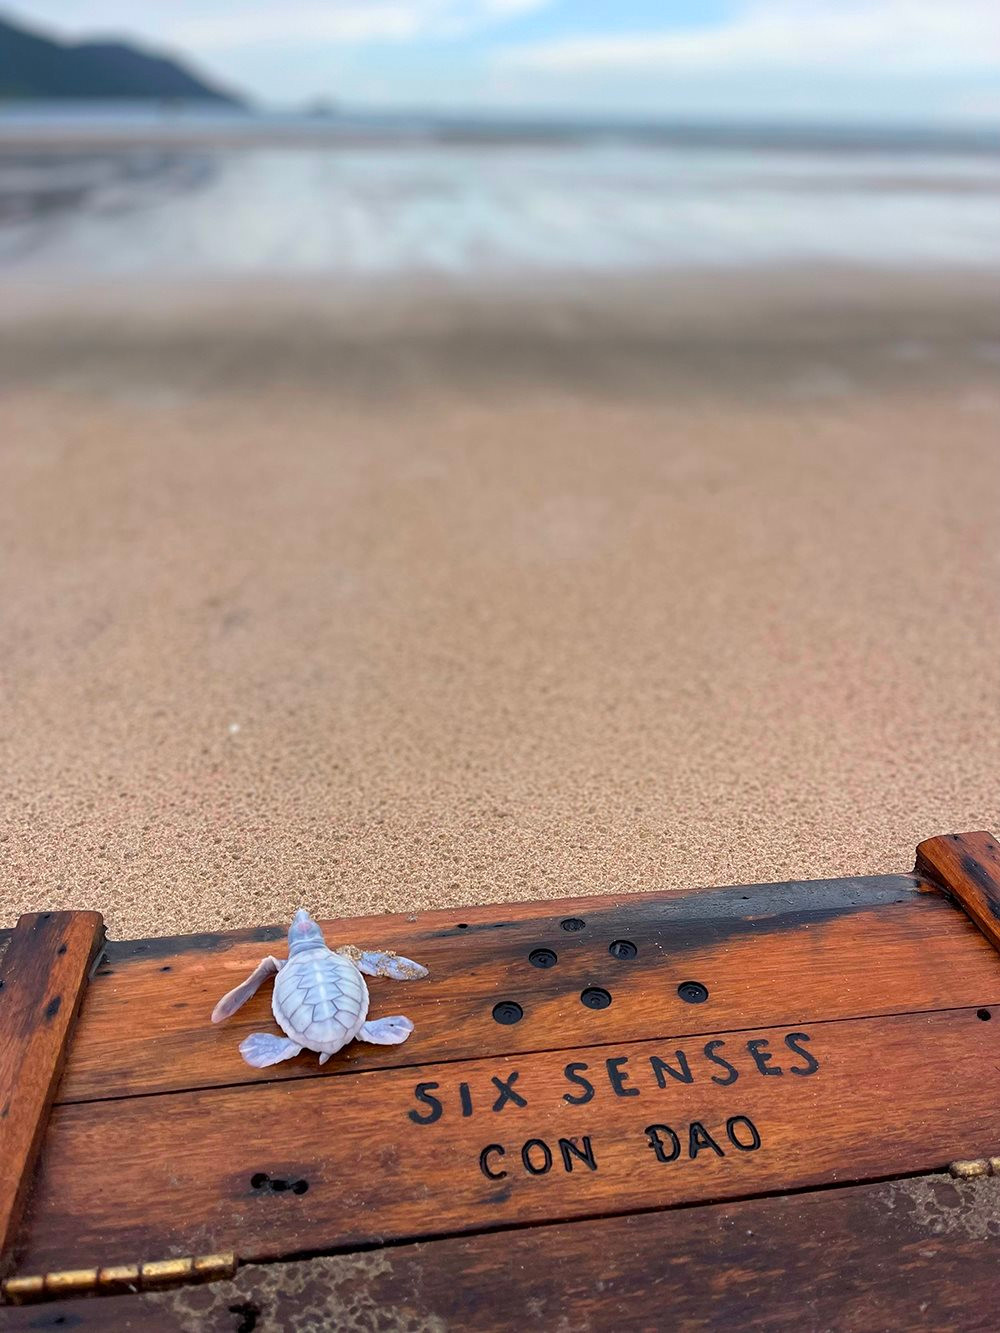 Rùa biển bạch tạng xuất hiện tại Six Senses - Điều kì diệu ở Côn Đảo - 3